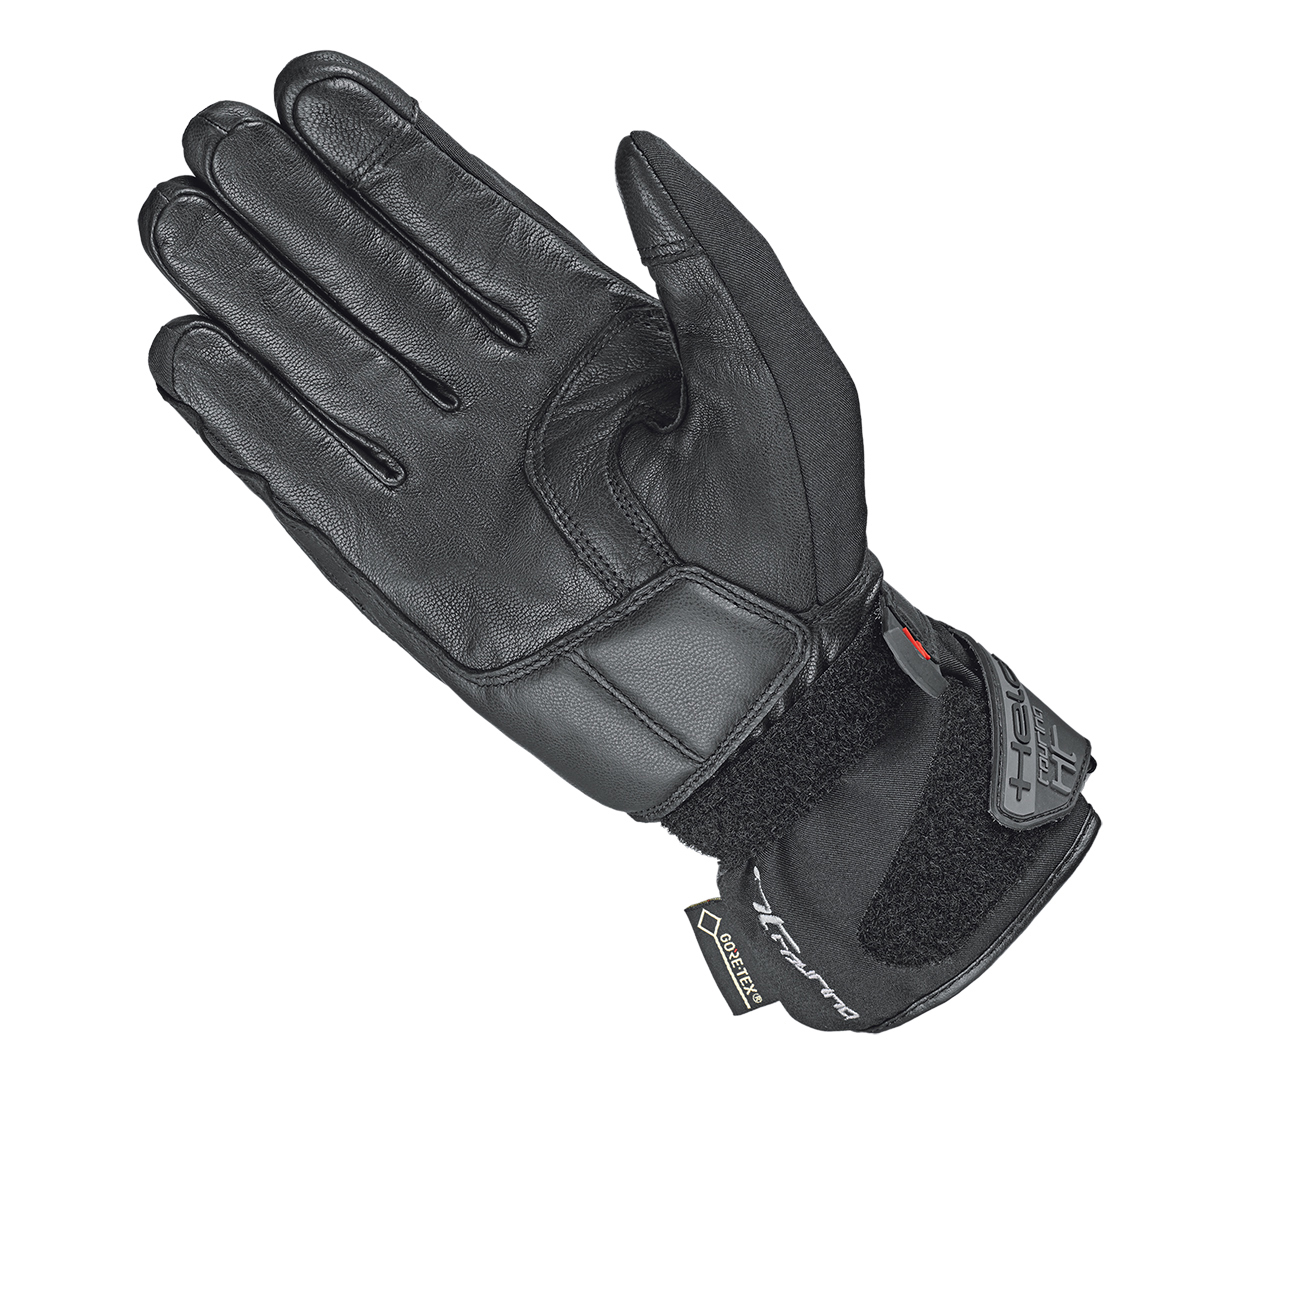 Satu II GORE-TEX® glove + Gore Grip technology